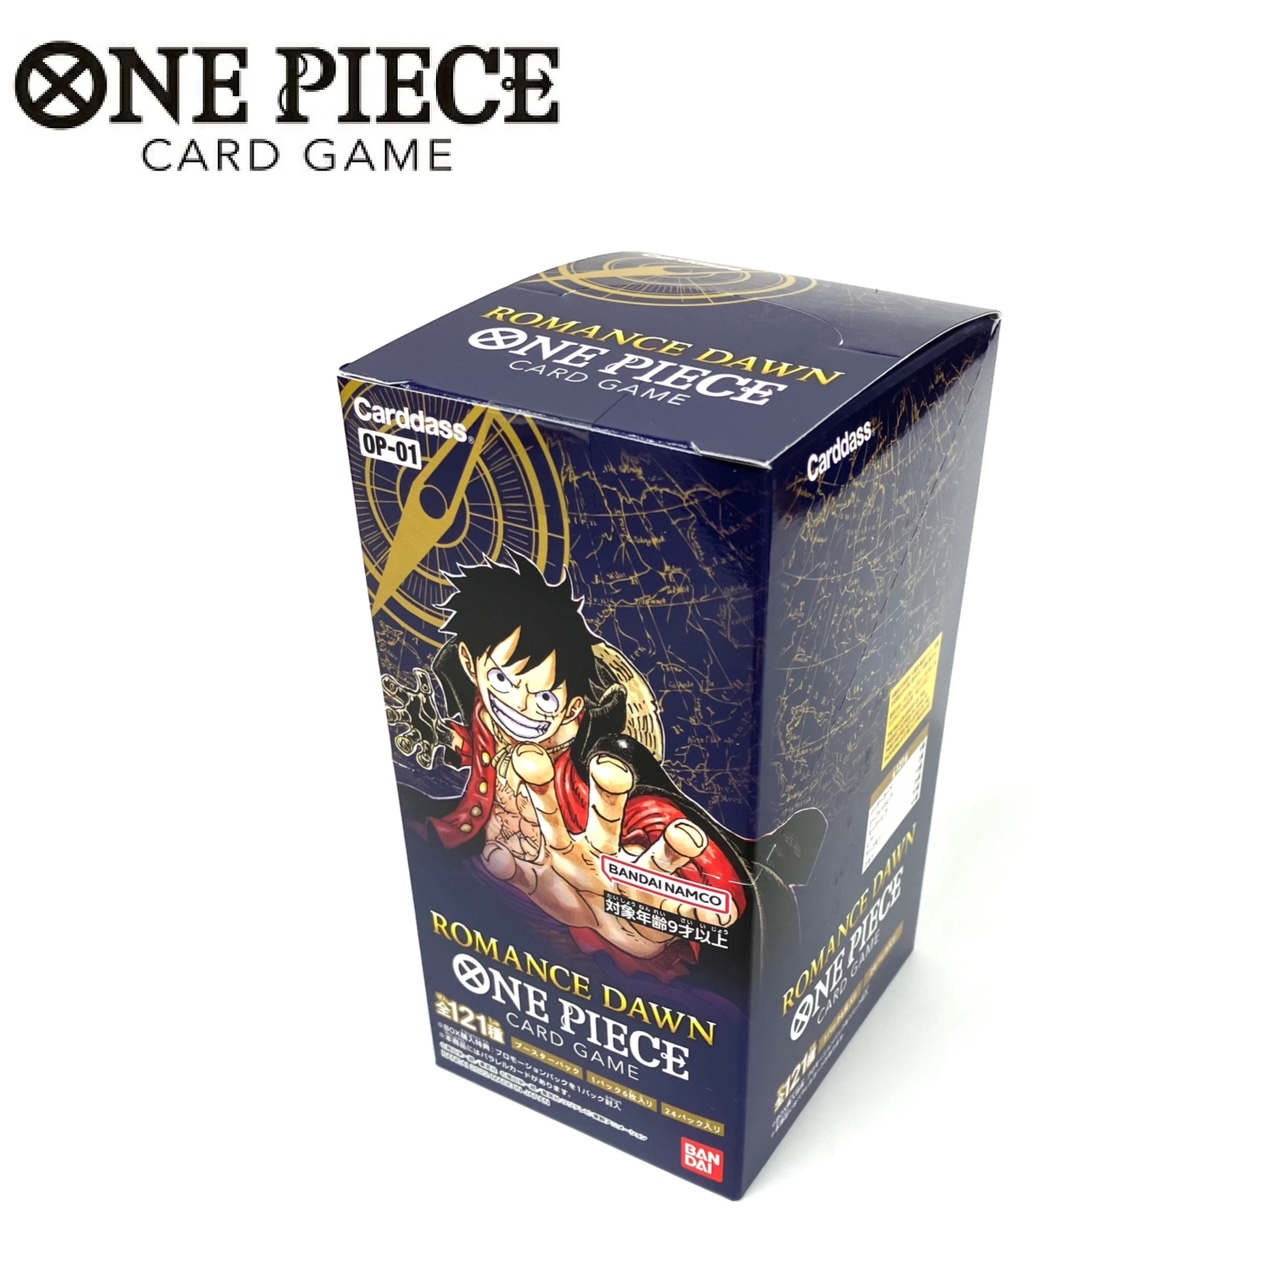 バンダイ カードダス ONE PIECEカードゲーム ROMANCE DAWN OP-01 [BOX 